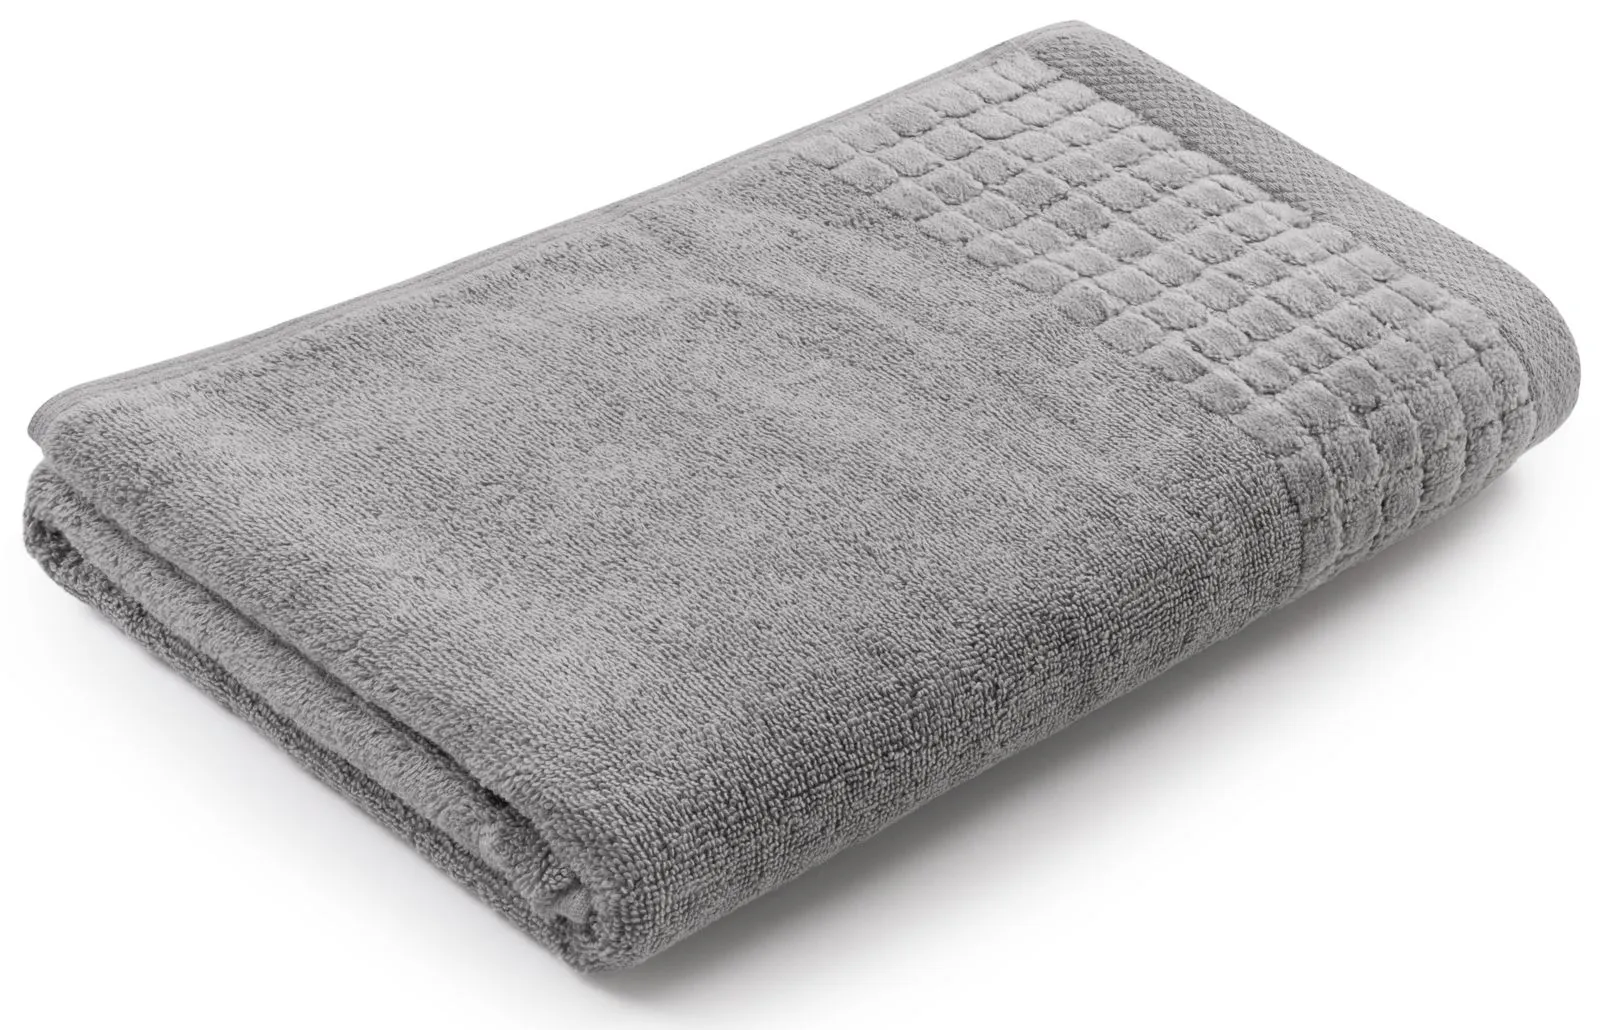 Gruby i miękki ręcznik kąpielowy 140×70 cm Larissa szary 500 g/m²